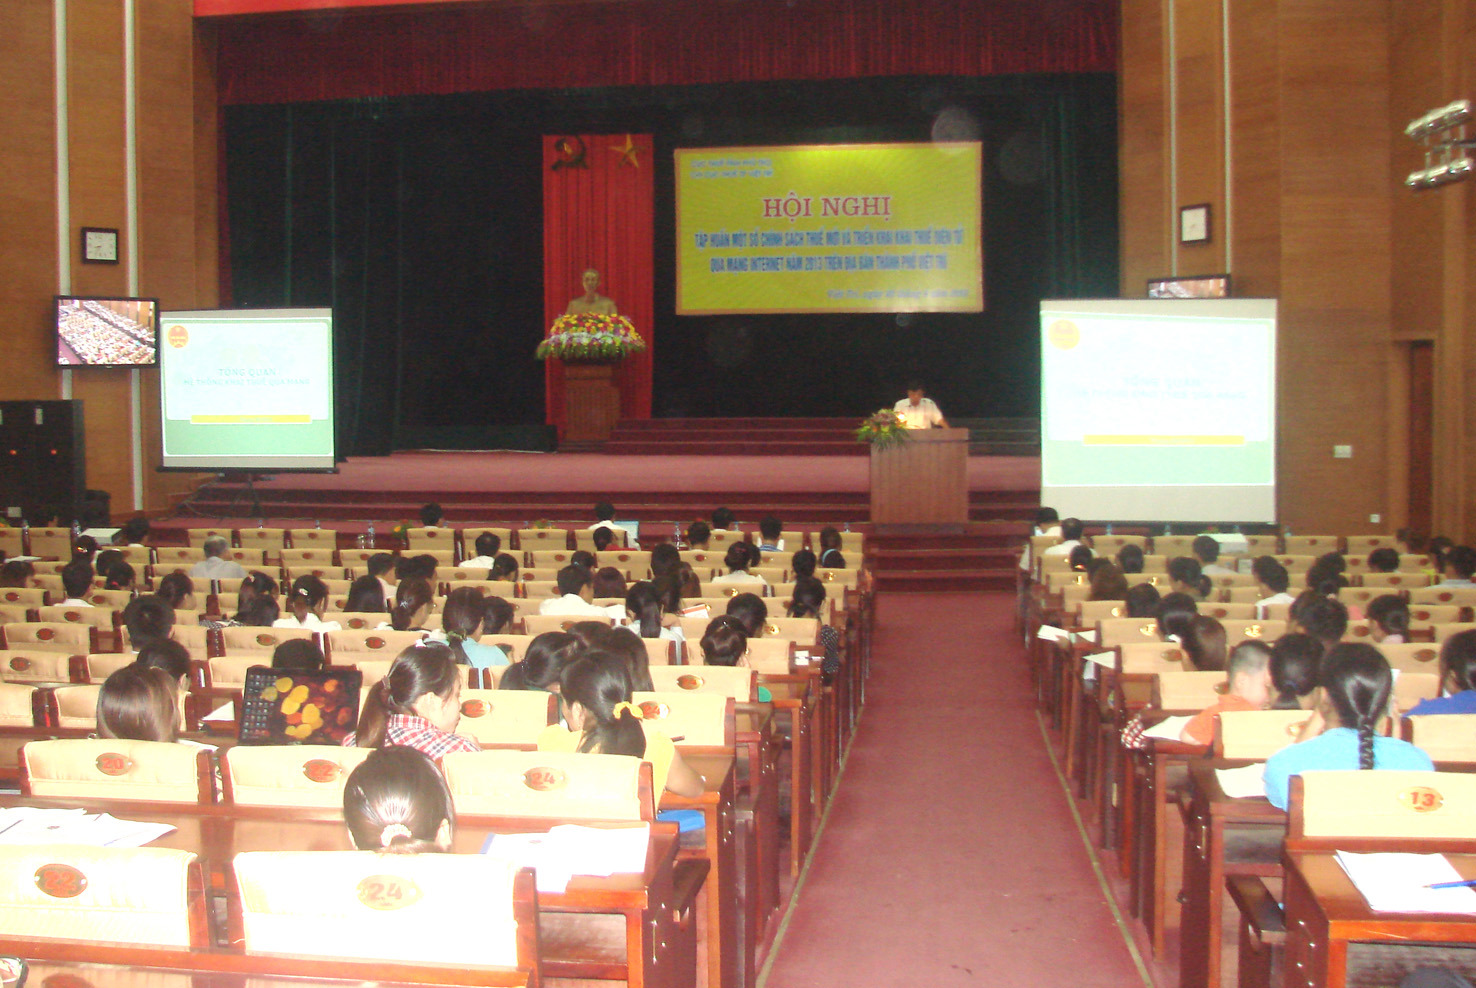  Chi cục Thuế TP. Việt Trì: Tập huấn chính sách thuế mới và kê khai thuế điện tử 